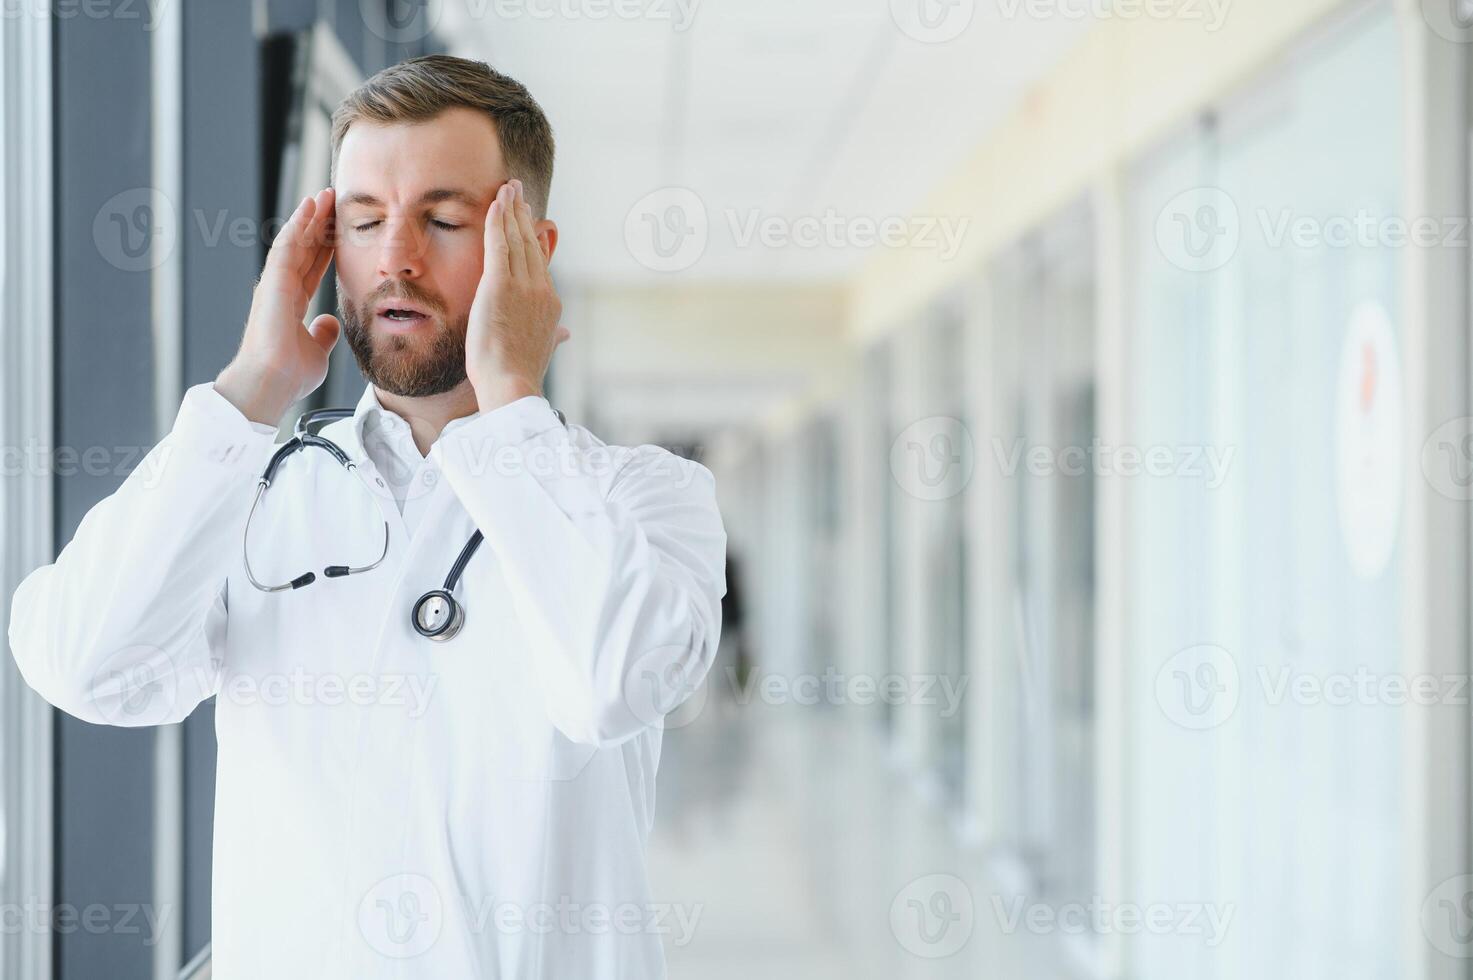 verdrietig dokter staand in ziekenhuis gang foto